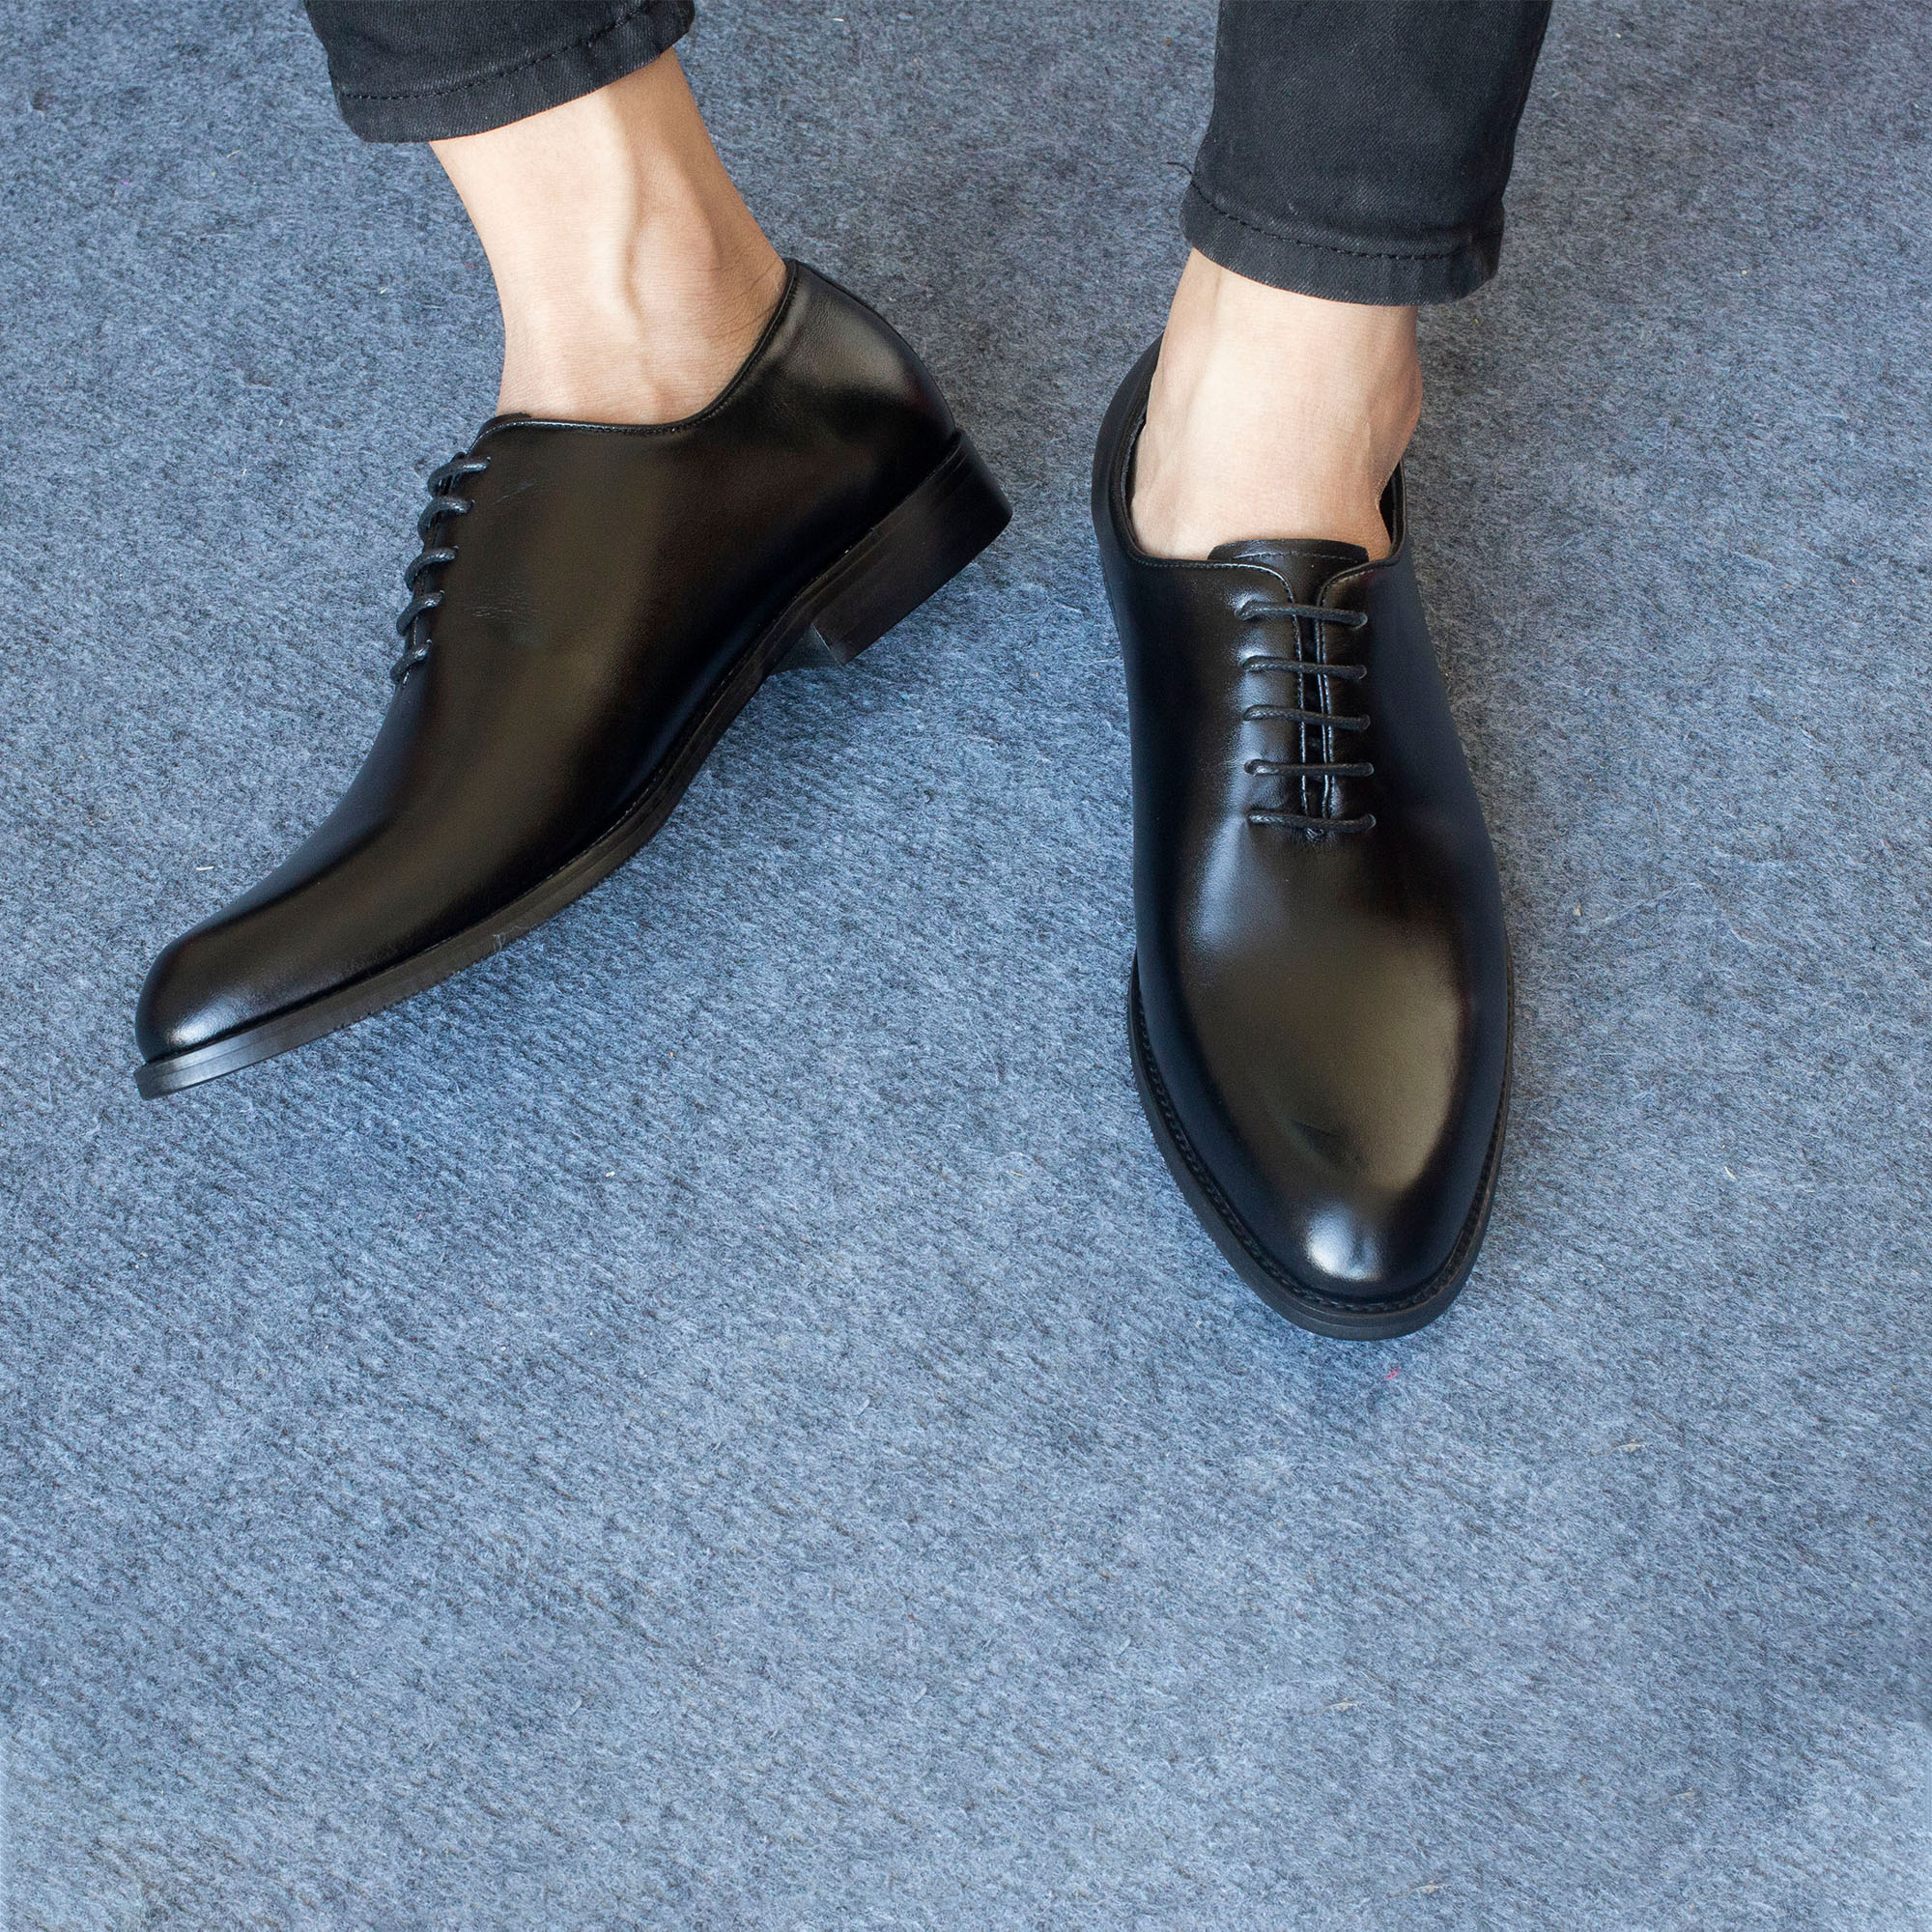 Giày da nam, giày oxford công sở Bụi Leather G101 - Da bò Nappa cao cấp - Bảo hành 12 tháng